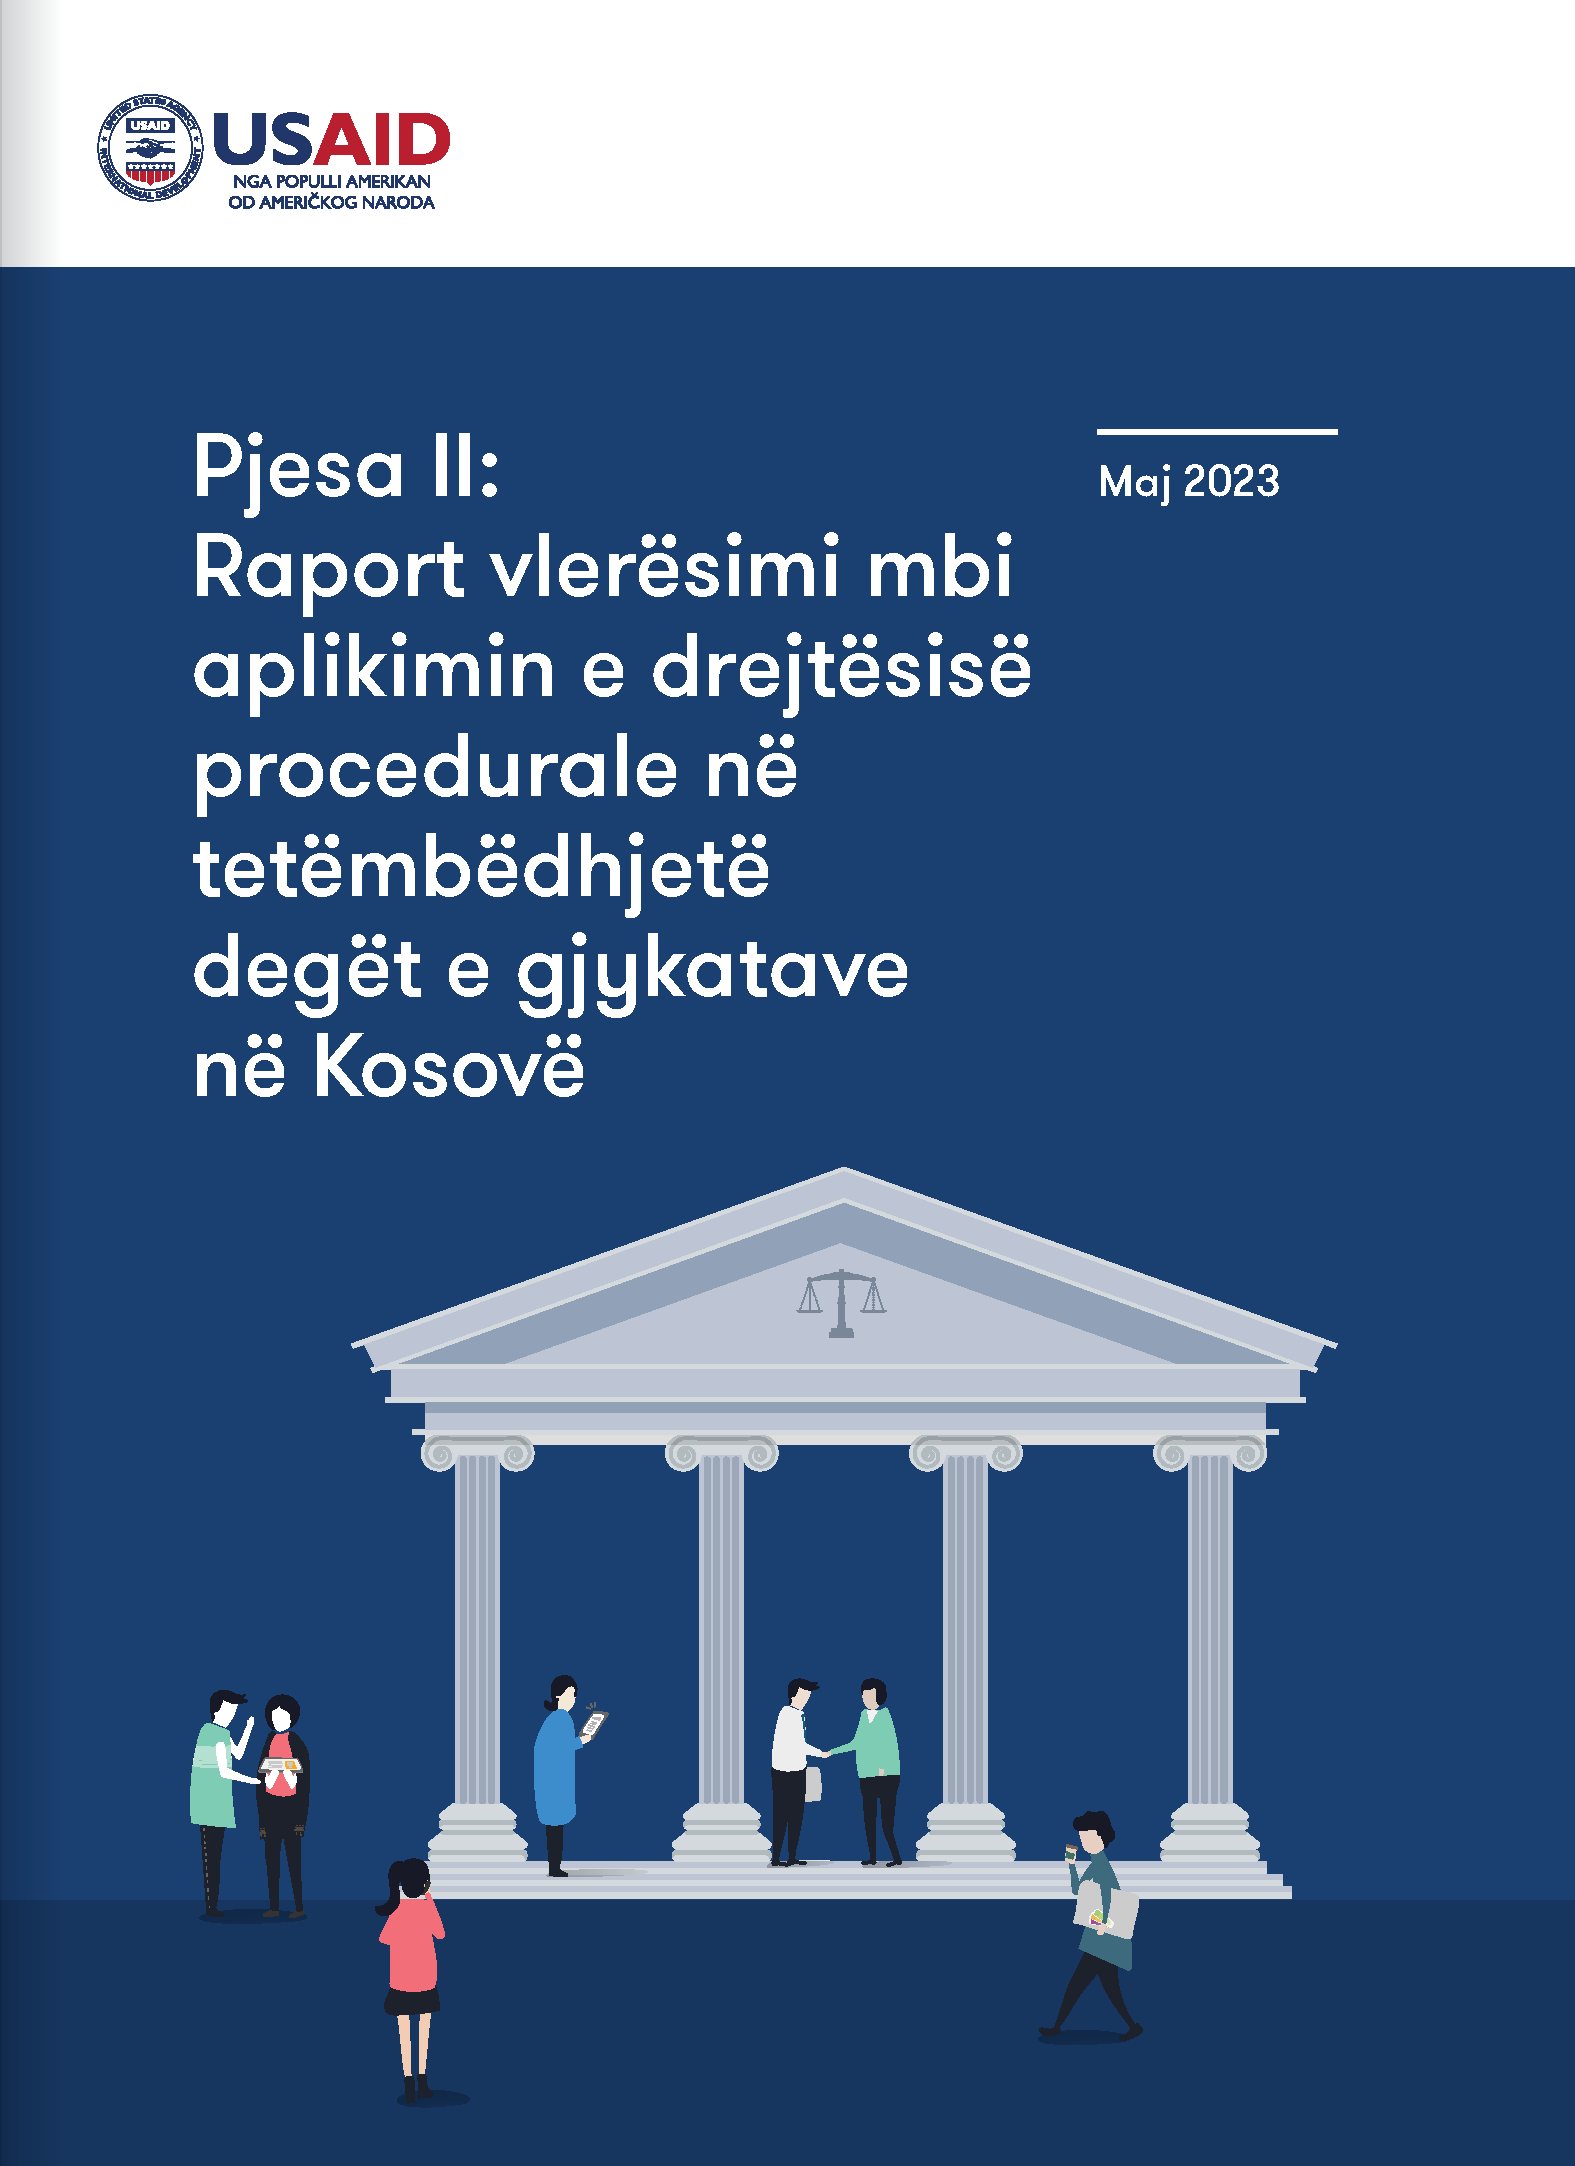 Pjesa II: Raport vlerësimi mbi aplikimin e drejtësisë procedurale në tetëmbëdhjetë degët e gjykatave në Kosovë